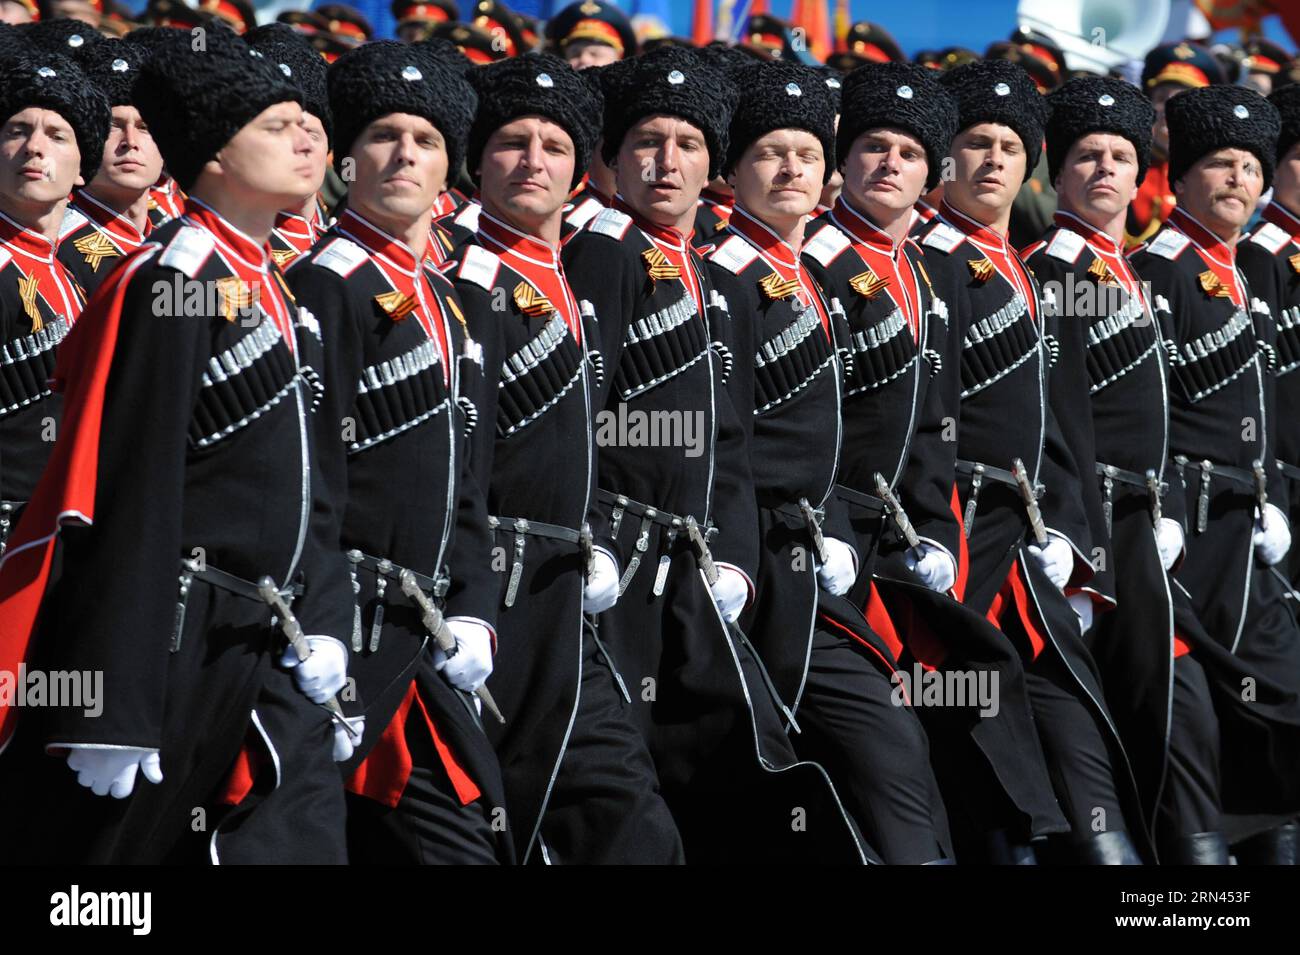 (150507) -- MOSKAU, Mai. 7. Mai 2015 – Soldaten des Bataillons der Kuban-Kosaken marschieren am 7. Mai 2015 auf dem Roten Platz Moskaus während der letzten Probe für die Militärparade am Siegtag. Russland feiert den 70. Jahrestag des Sieges von 1945 über Nazi-Deutschland am 9. Mai. RUSSLAND-MOSKAU-WWII JAHRESTAG-PARADE-PROBE DaixTianfang PUBLICATIONxNOTxINxCHN Moskau 7. Mai 2015 Soldaten des Bataillons der Kuban-Kosaken marschieren AM 7. Mai 2015 auf dem Roten Platz in Moskau während der letzten Probe für die Militärparade zum Siegtag Russland feiert den 70. Jahrestag des Sieges 1945 Stockfoto